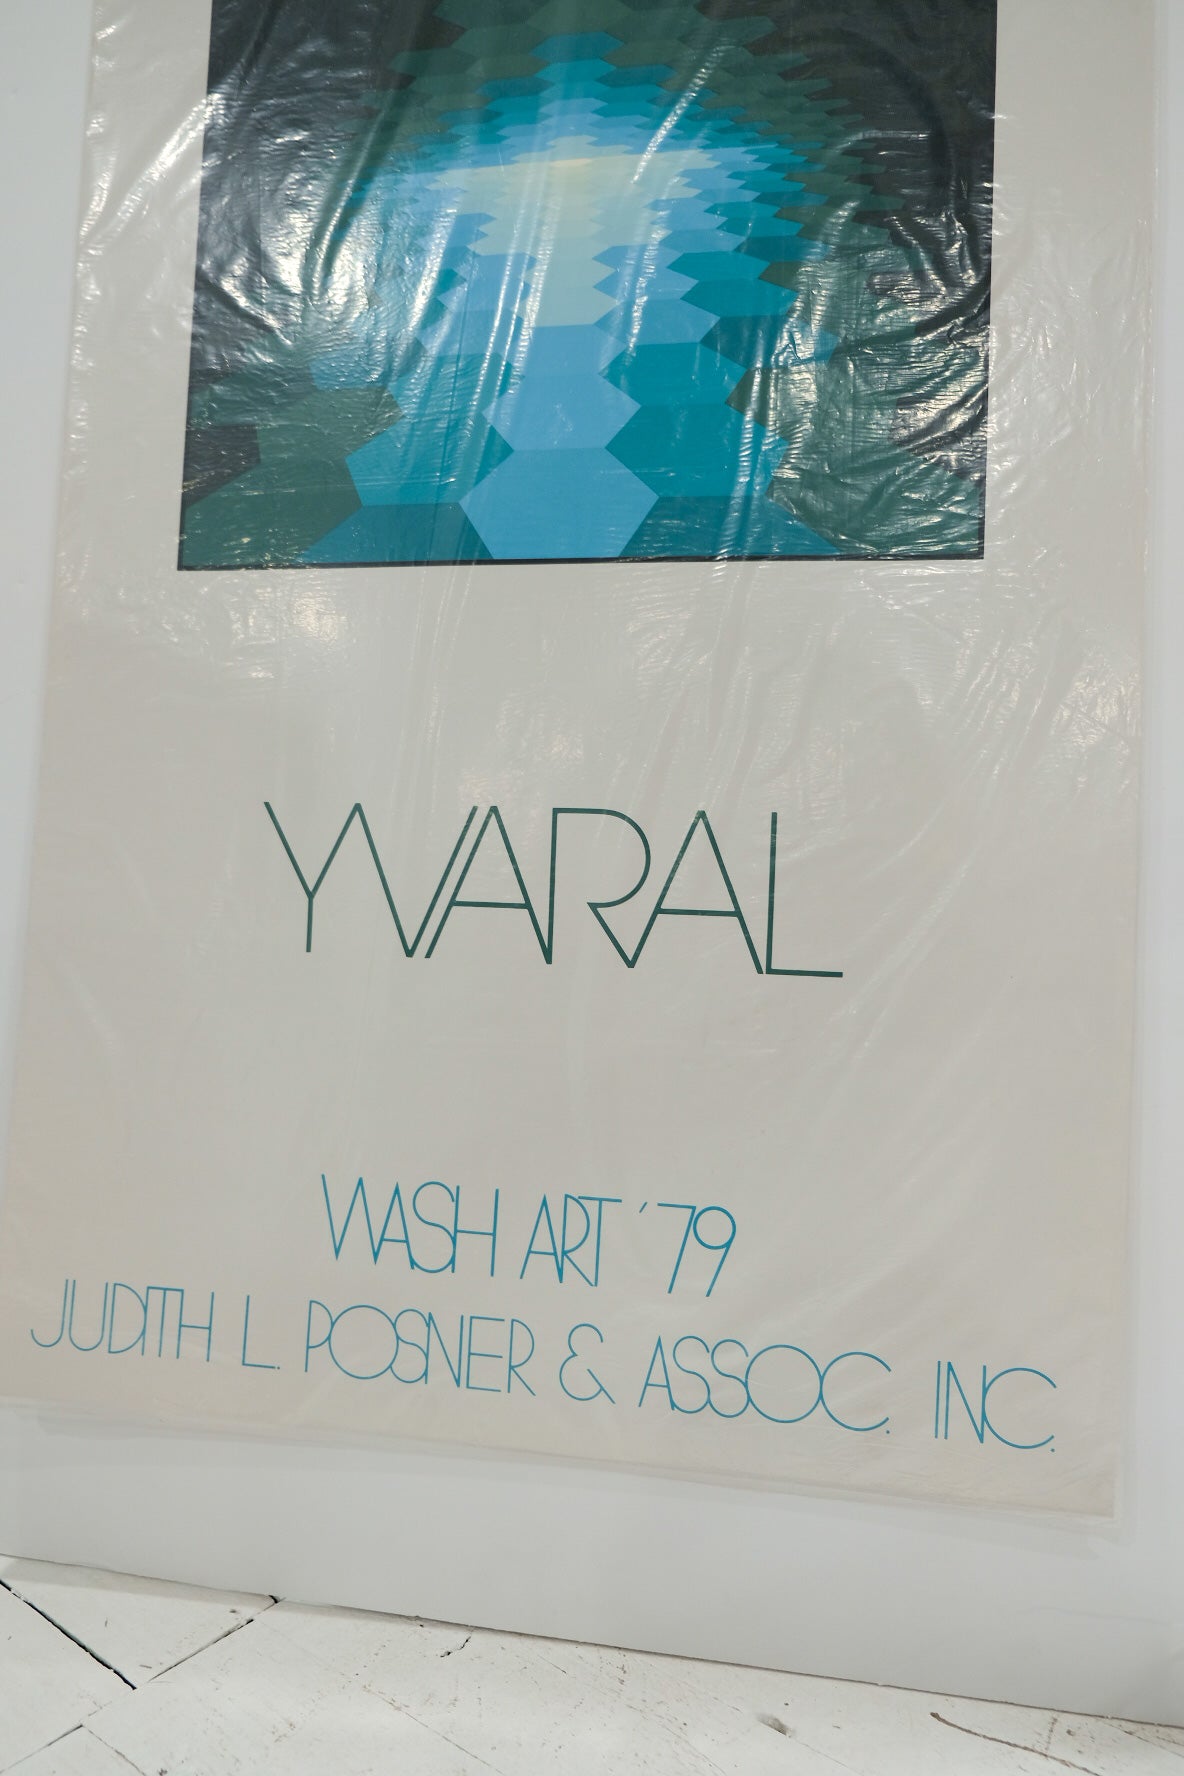 Yvaral Varsarely Wash Art '79 Judith L Posner